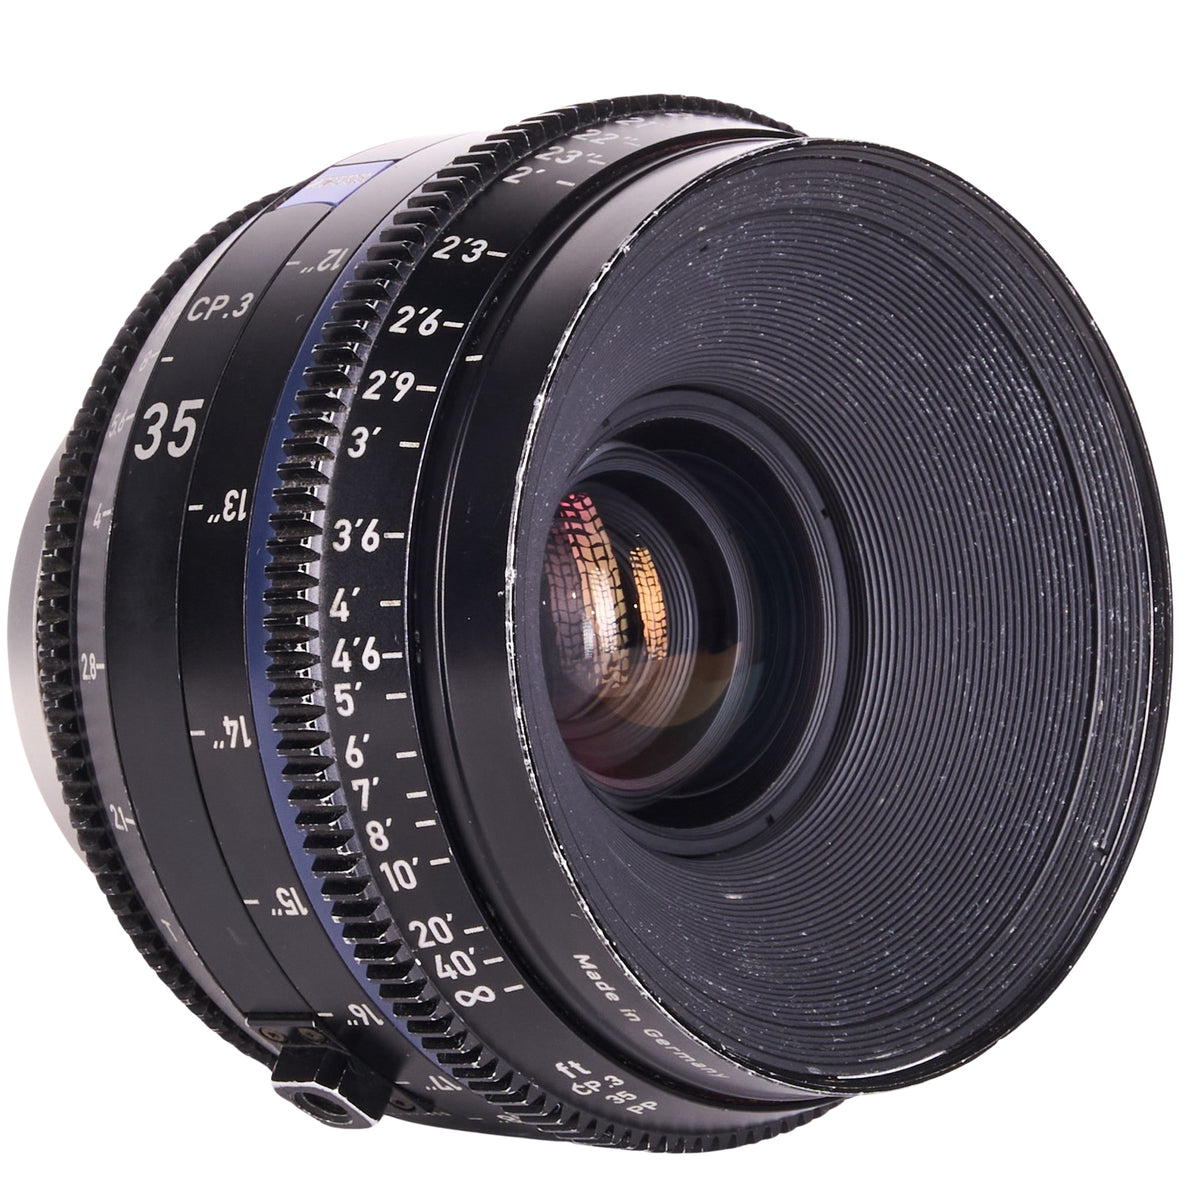 LENS3550-8846 Zeiss CP.3 Lens Set 15mm 25mm 35mm 50mm 85mm EF Mount_000699.JPG